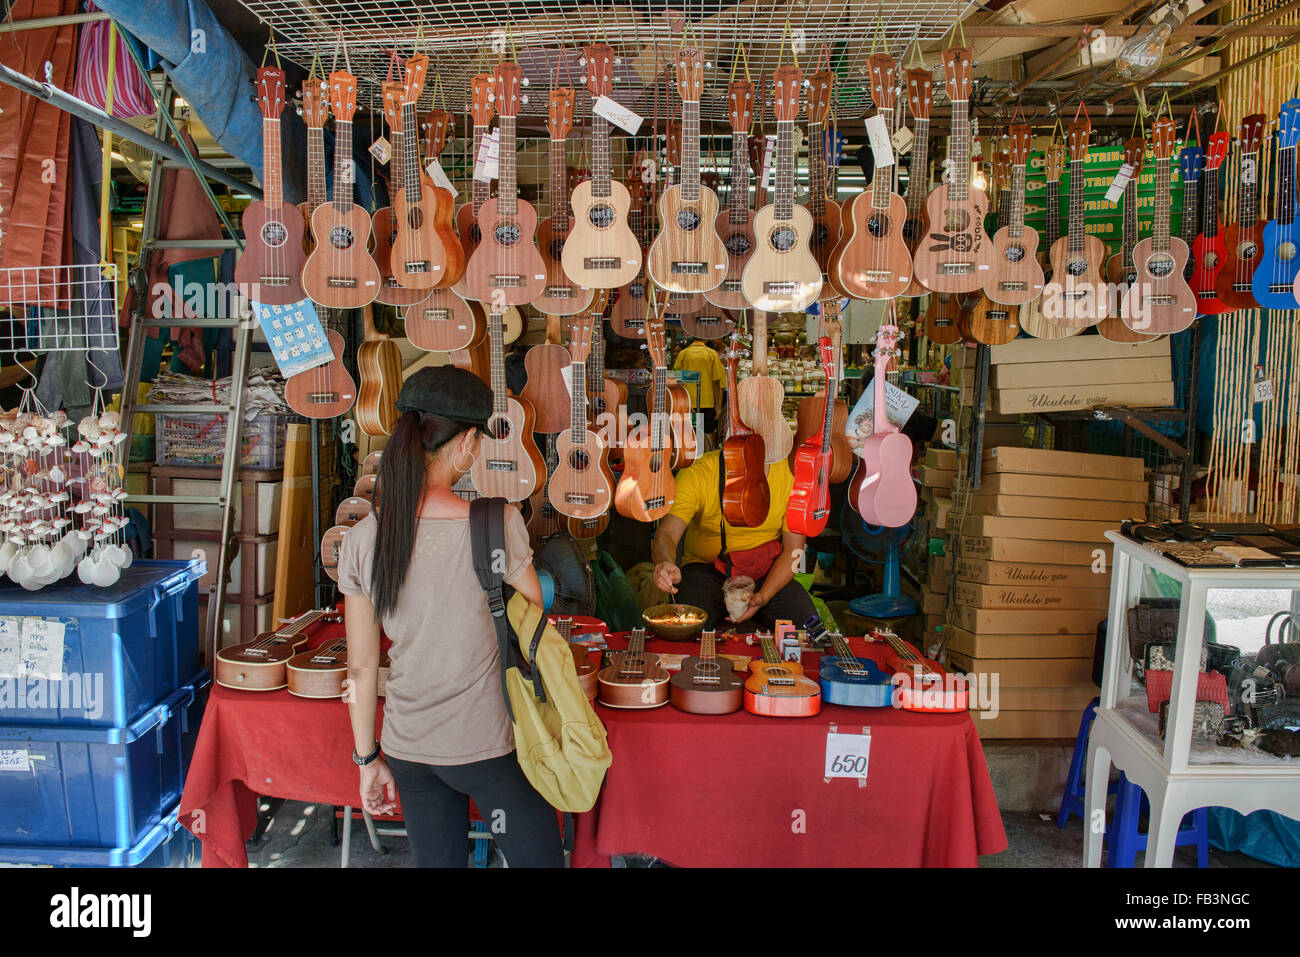 Ukulele shop at Chatuchak Market in Bangkok, Thailand Stock Photo - Alamy